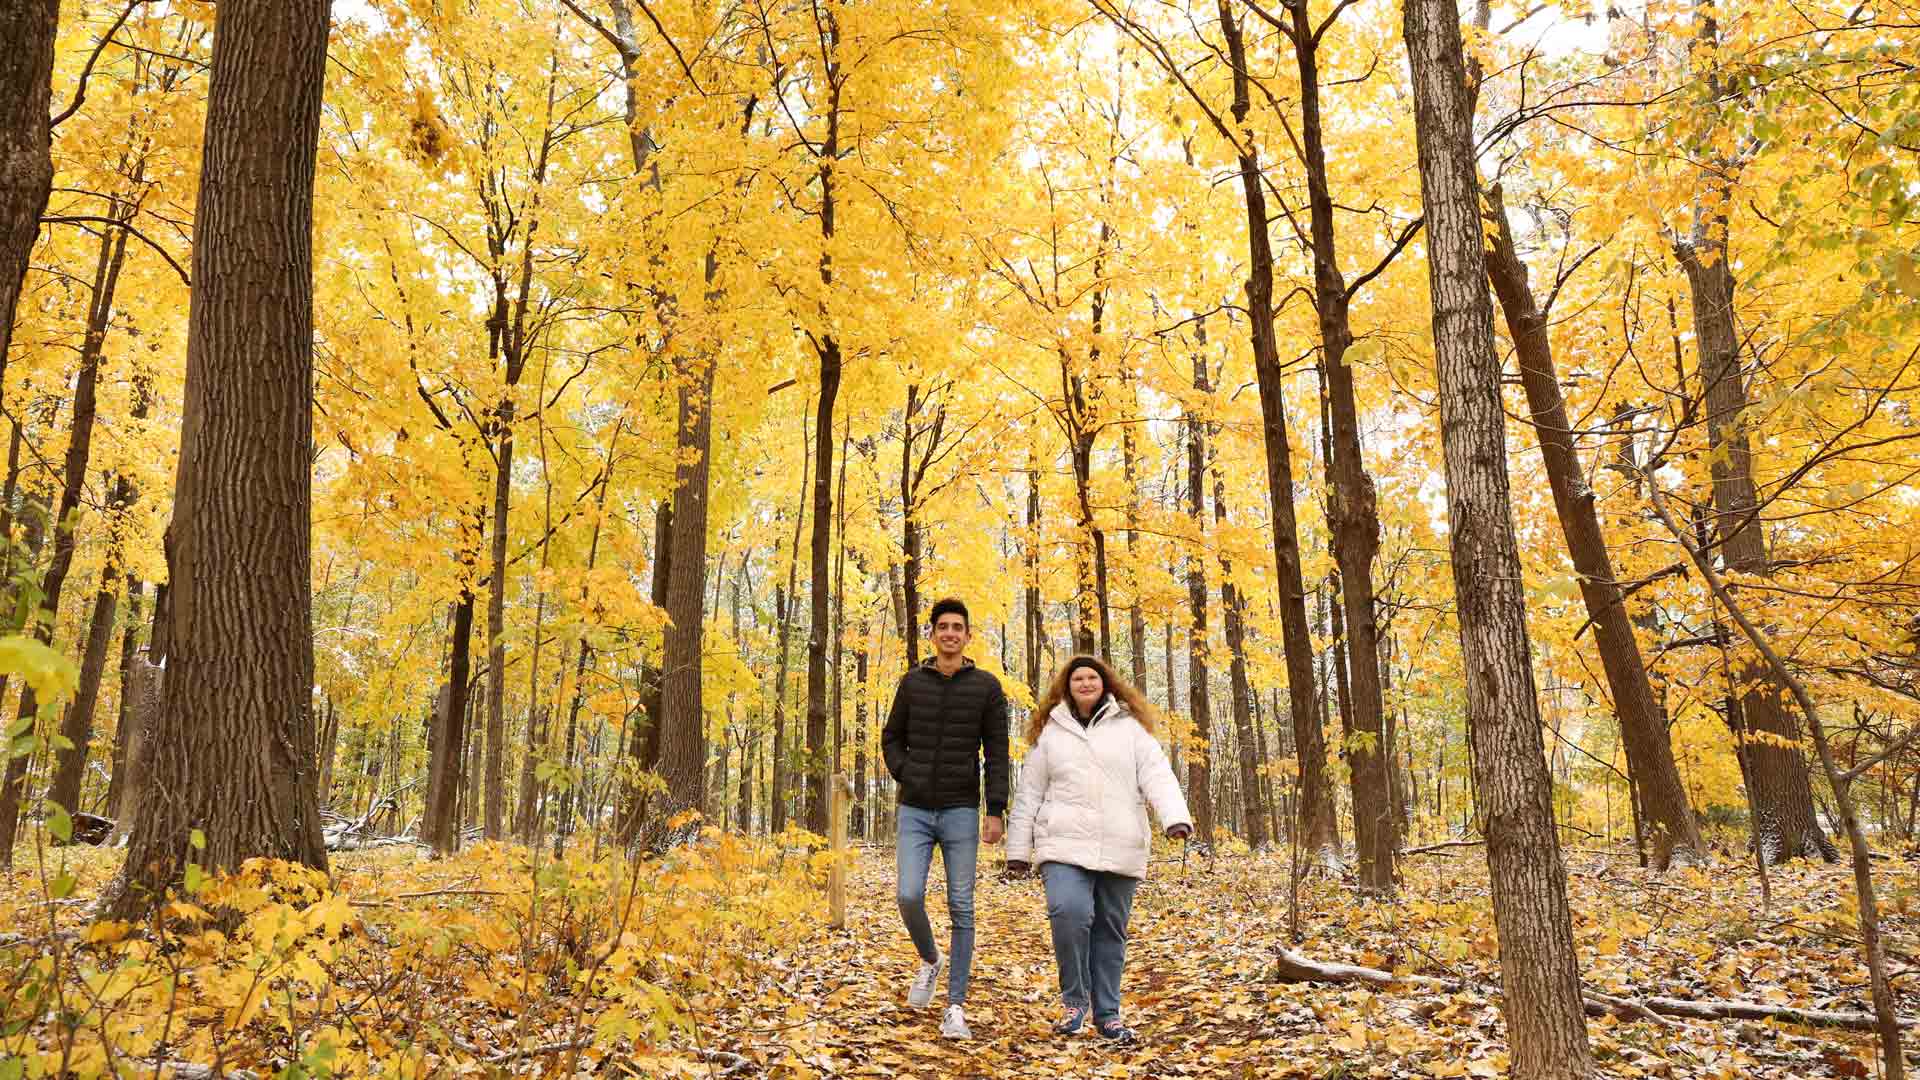 Find late-fall fun in Marshfield | Fall hiking in Marshfield WI